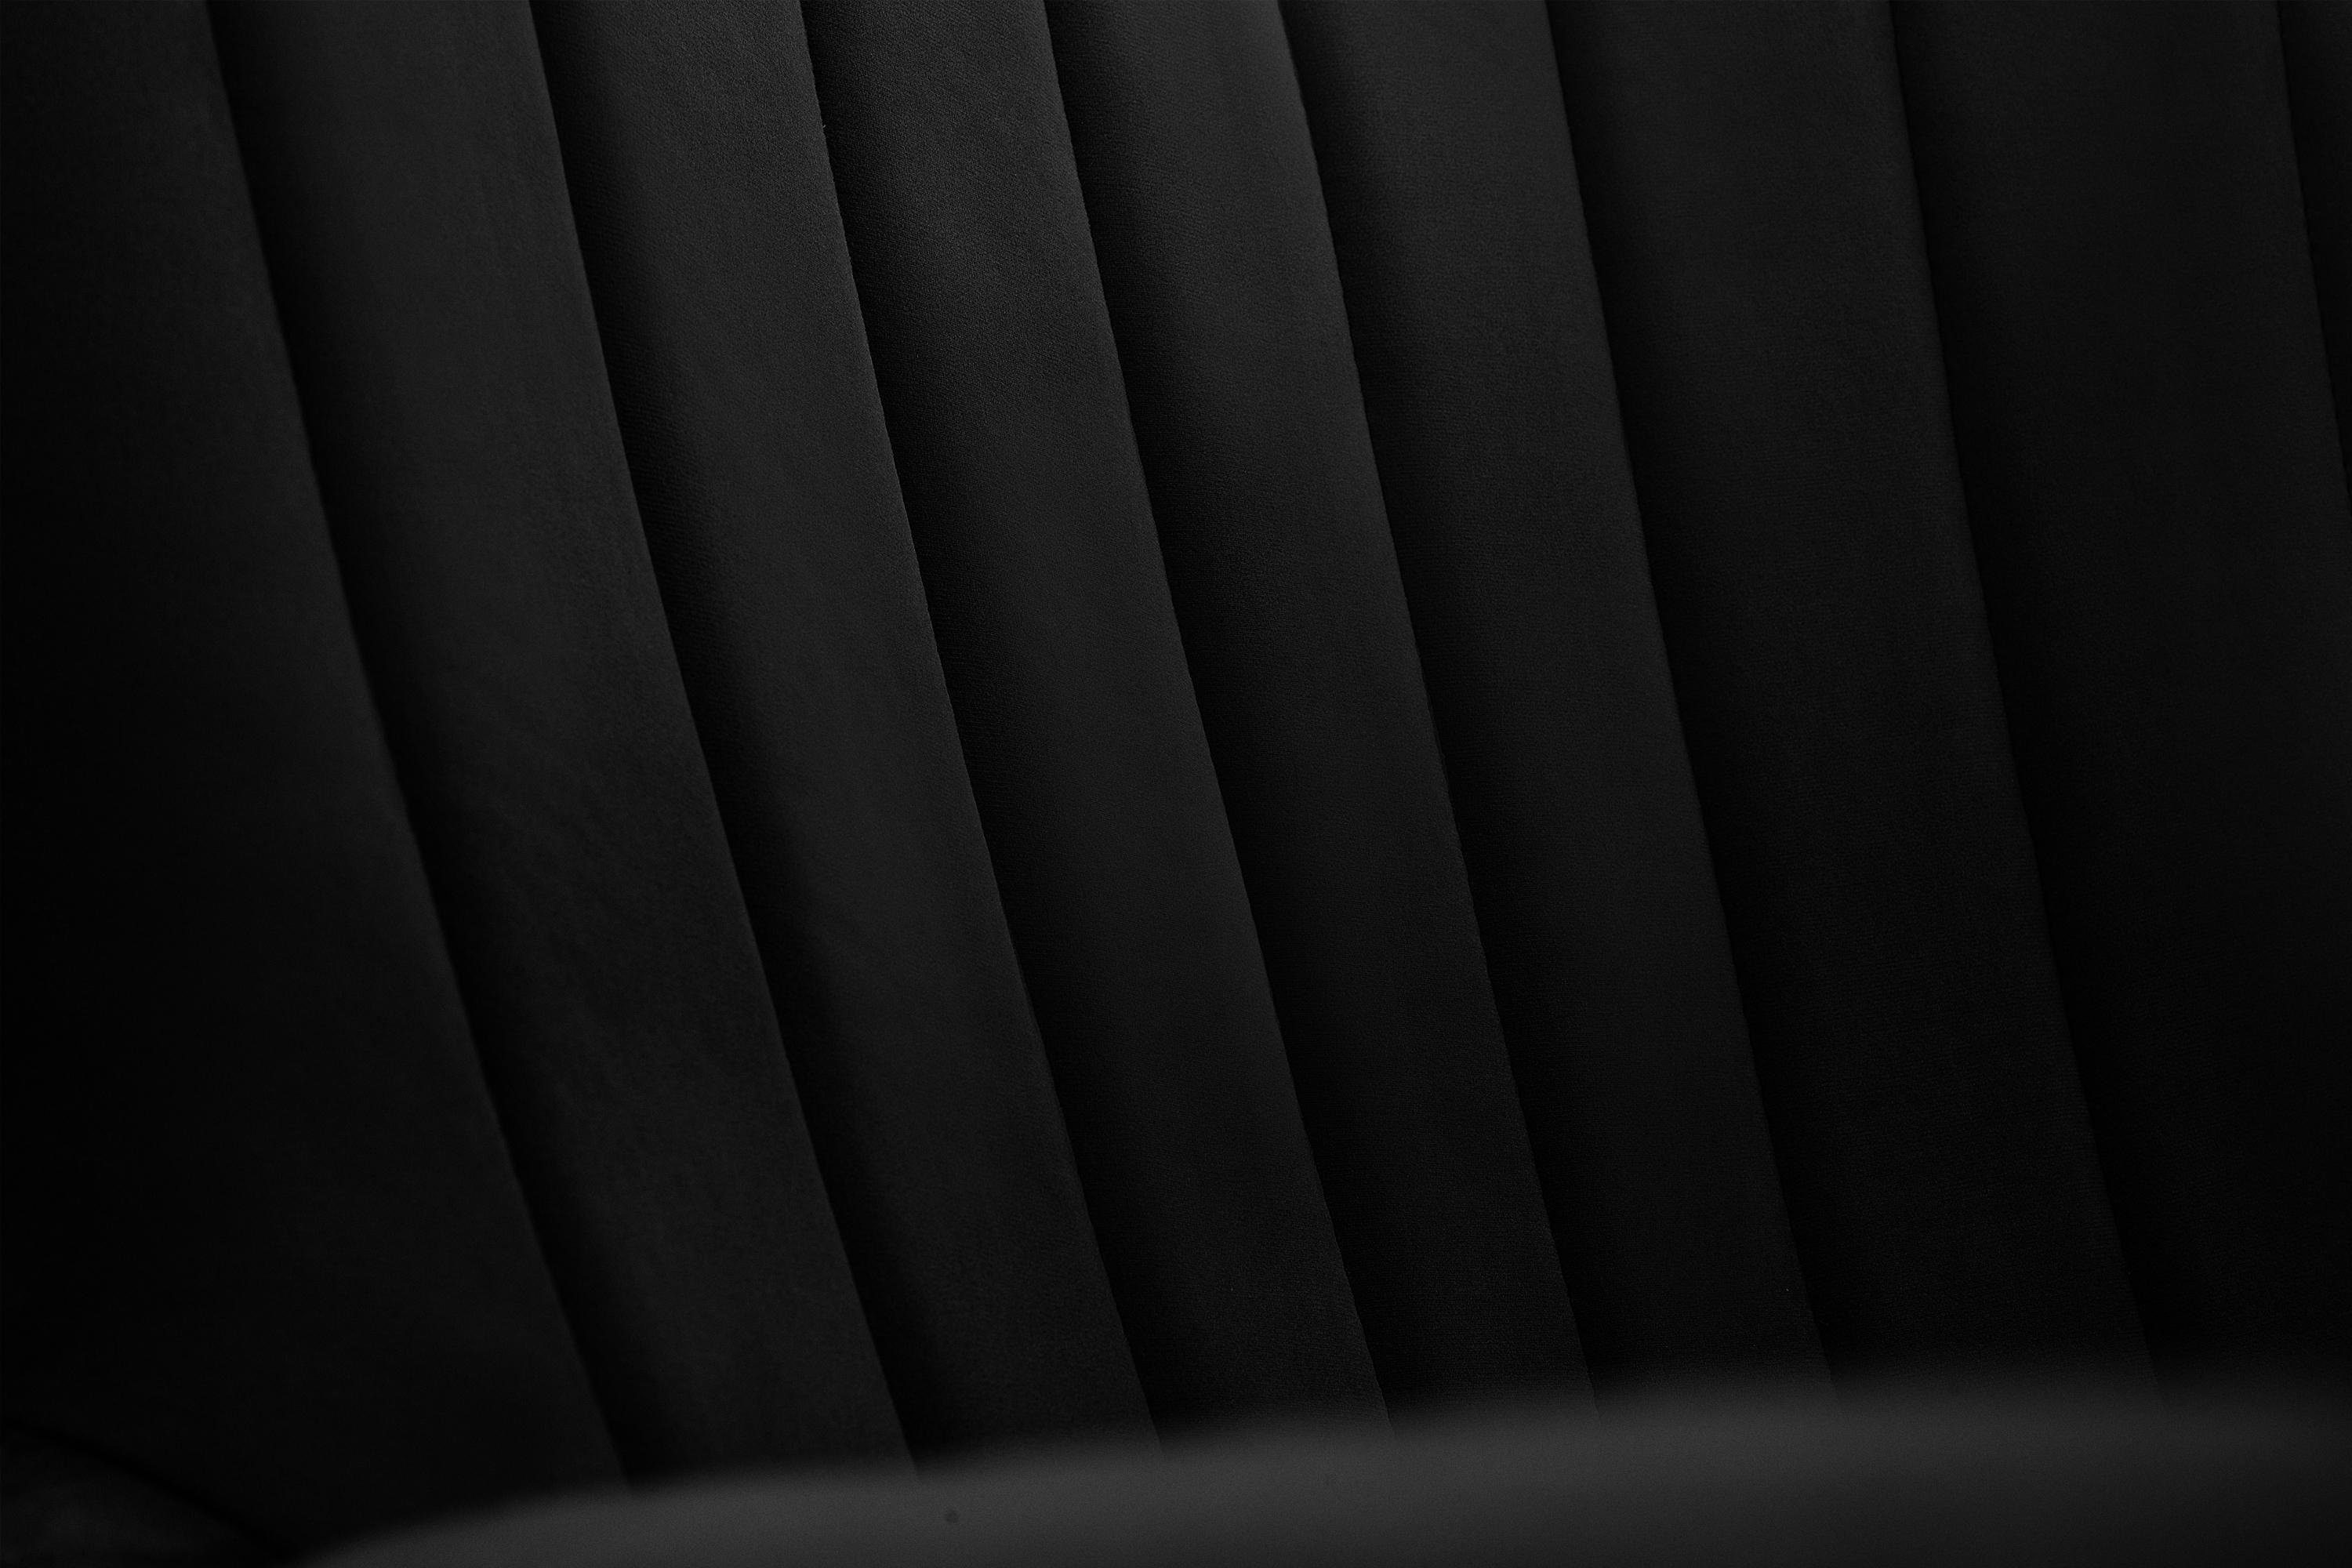 Schwarz Sitz, PUR-Schaum GADI, lackierte im schwarz Velourstoff, schwarz Holzbeine | Ohrensessel Konsimo